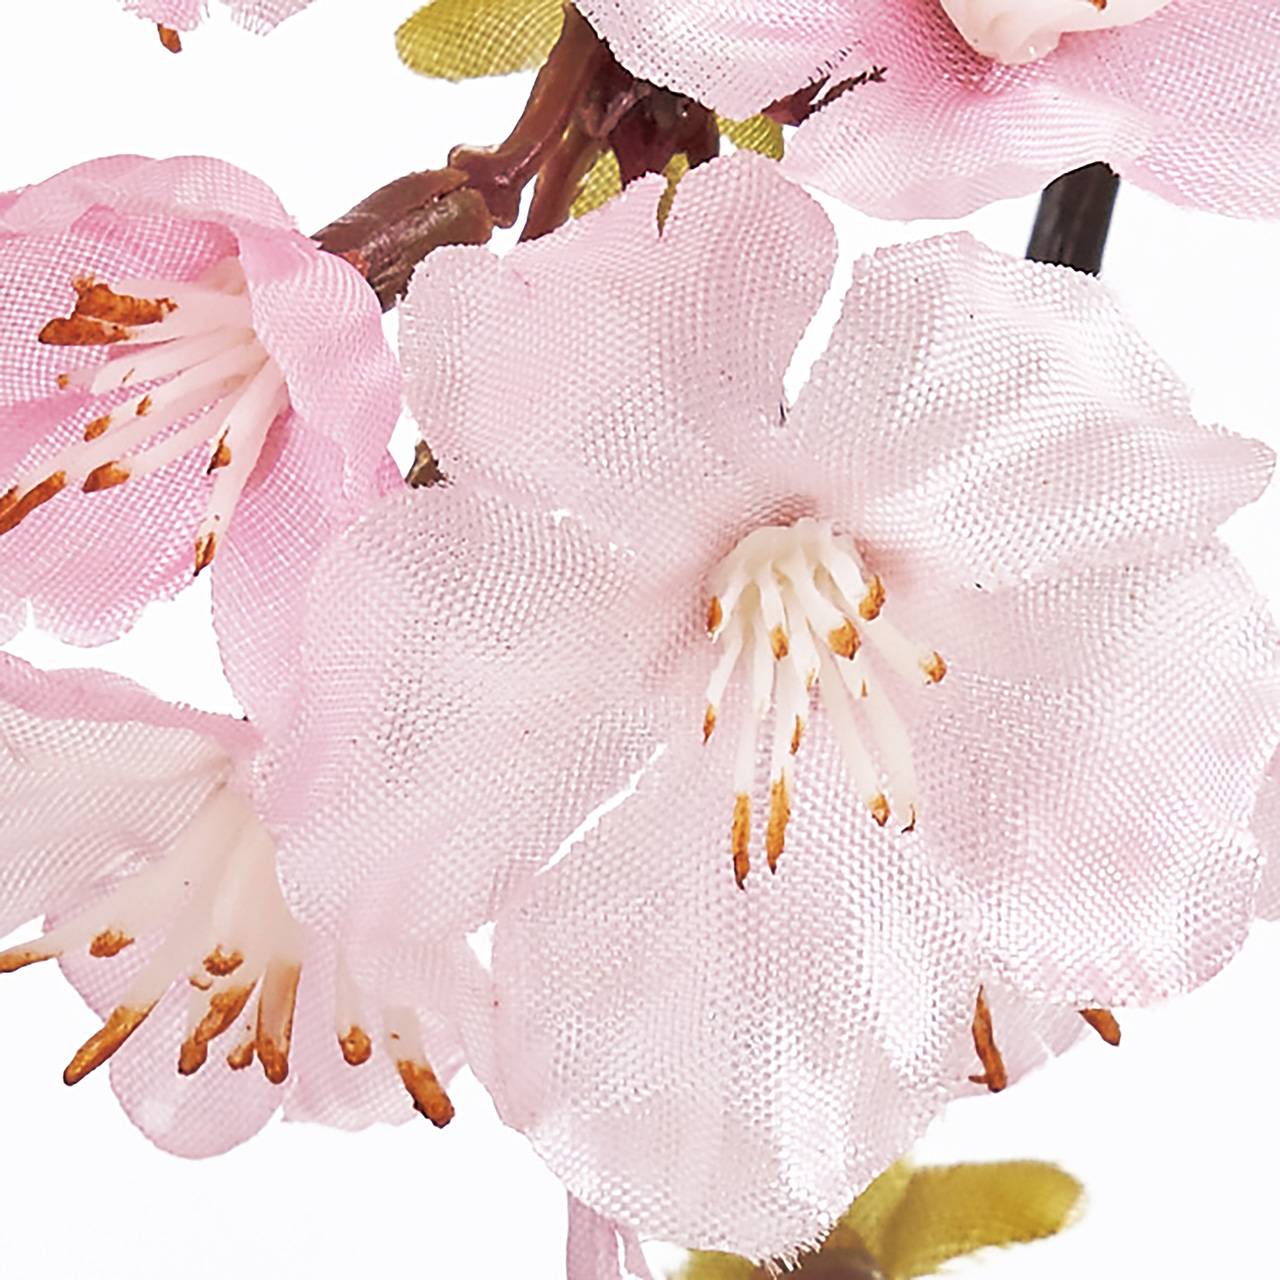 マイフラ 通販 Magiq 薄紅の桜 バイン ピンク アーティフィシャルフラワー 造花 さくら Fm 花径2 4 長さ 約cm ピンク Magiq アーティフィシャルフラワー 造花 全国にmagiq 花器 花資材などをお届けします